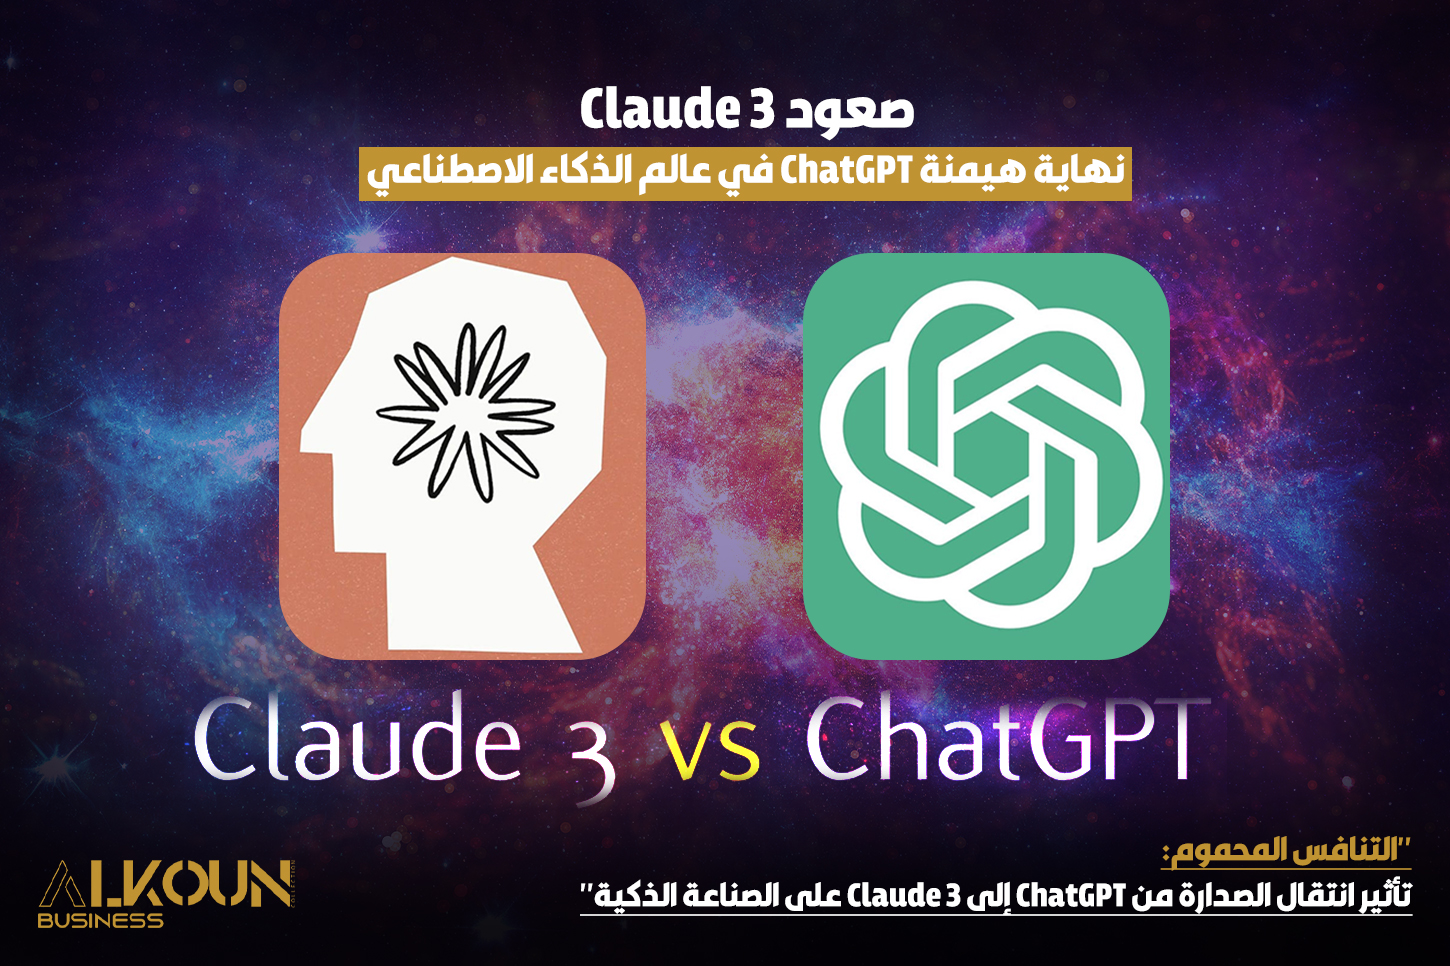 "التنافس المحموم: تأثير انتقال الصدارة من ChatGPT إلى Claude 3 على الصناعة الذكية"